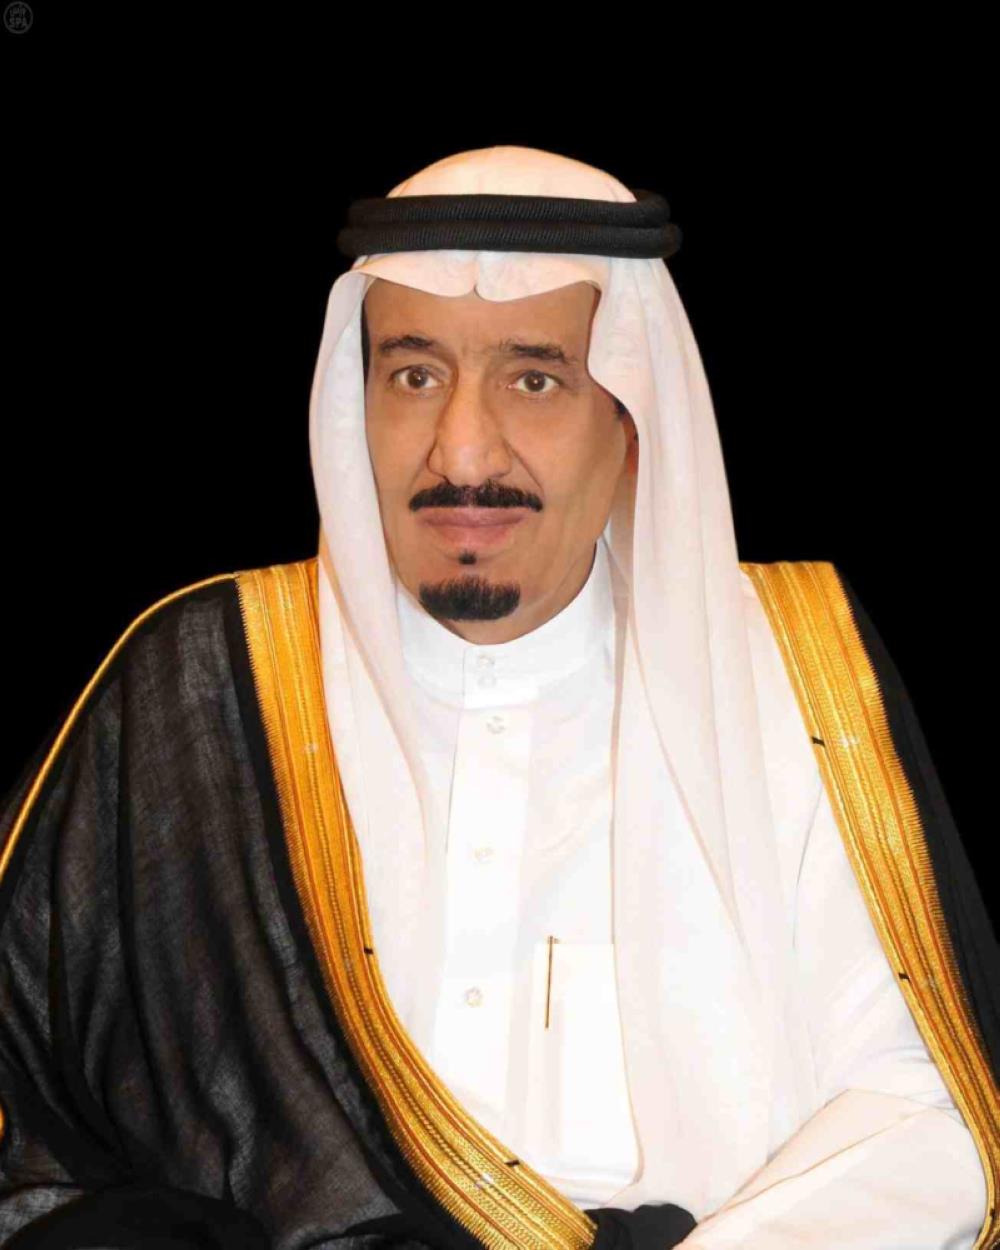 السعودية - أمر ملكي بترقية وتعيين 24 قاضيا بديوان المظالم